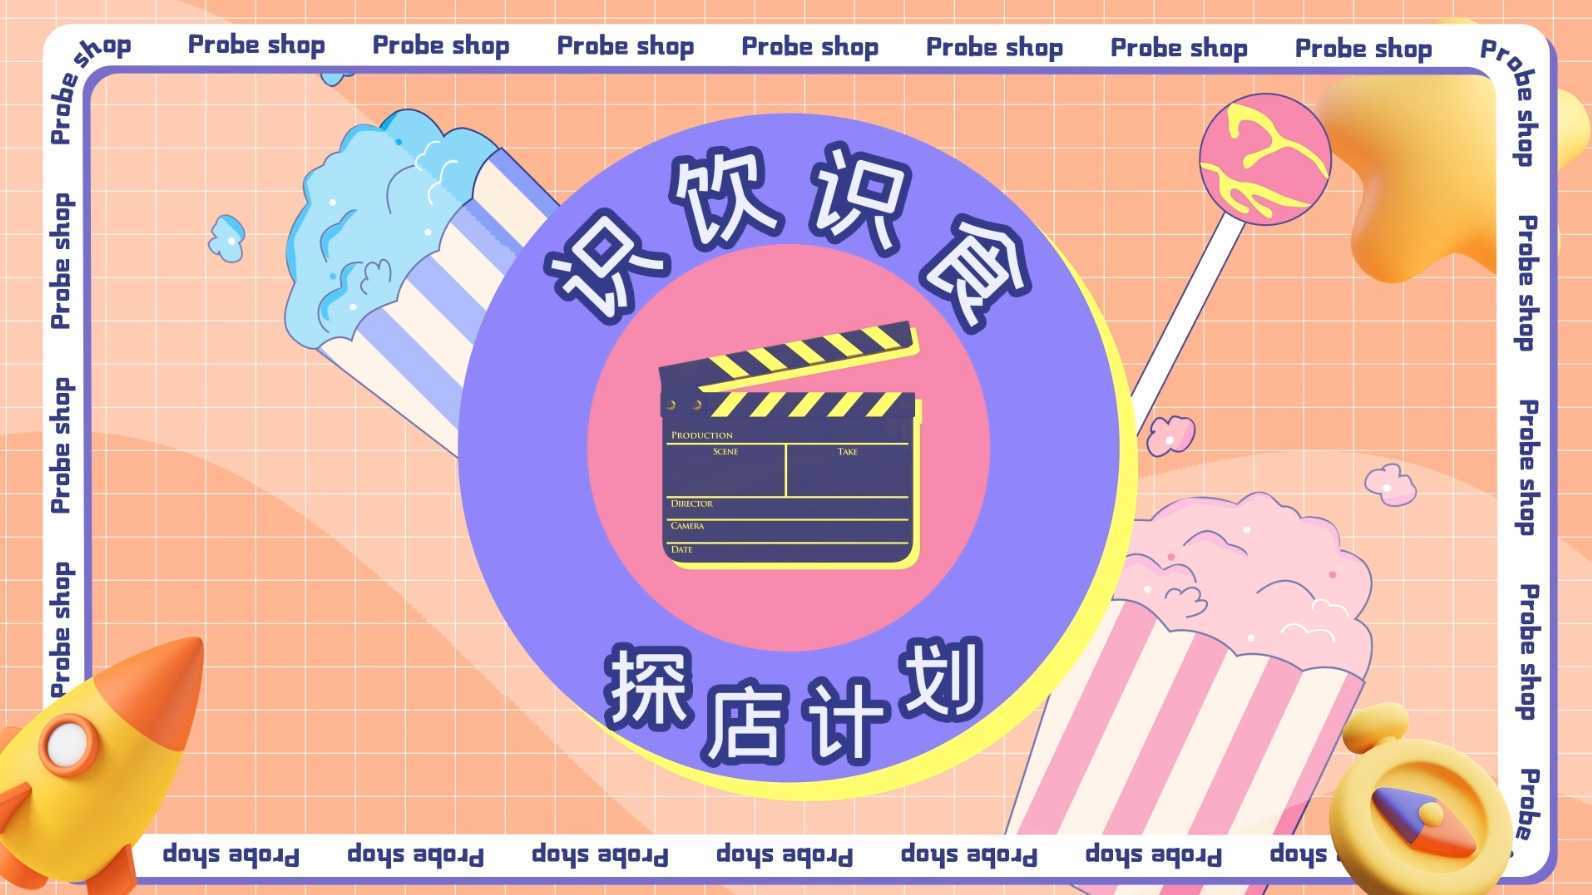 香港明星傅颖-顺德龙江探店计划